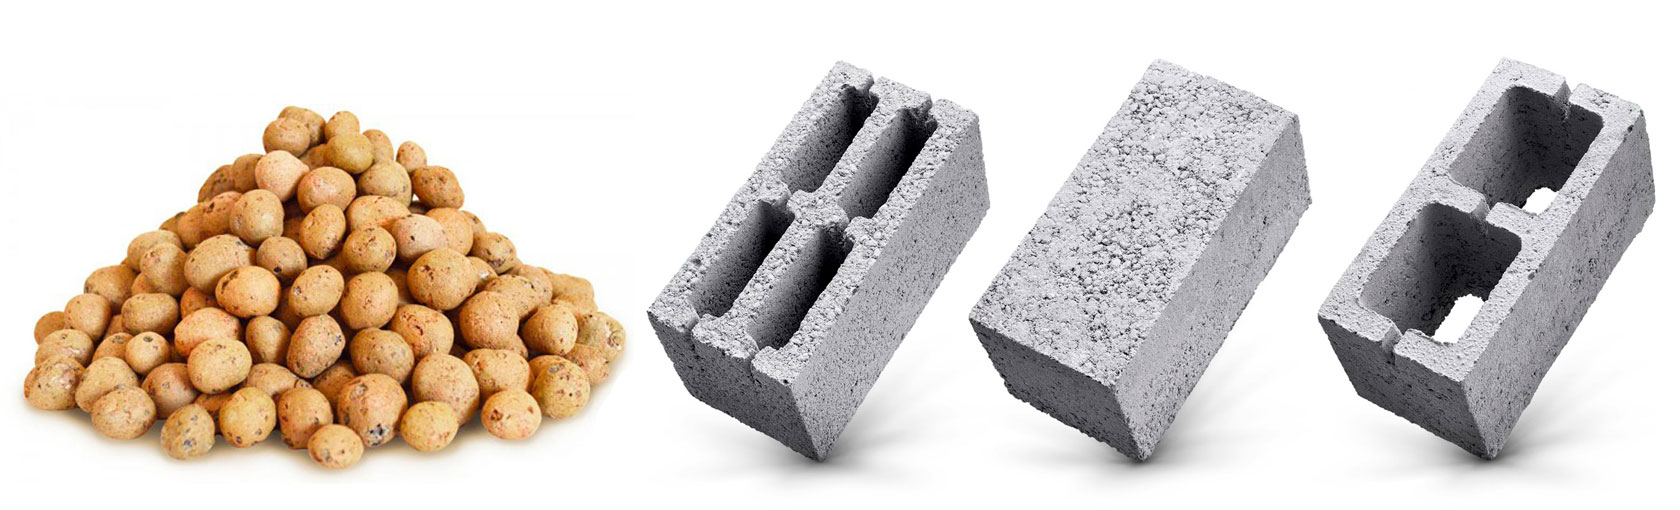 Керамзитобетон плюсы и фрезеры для бетона